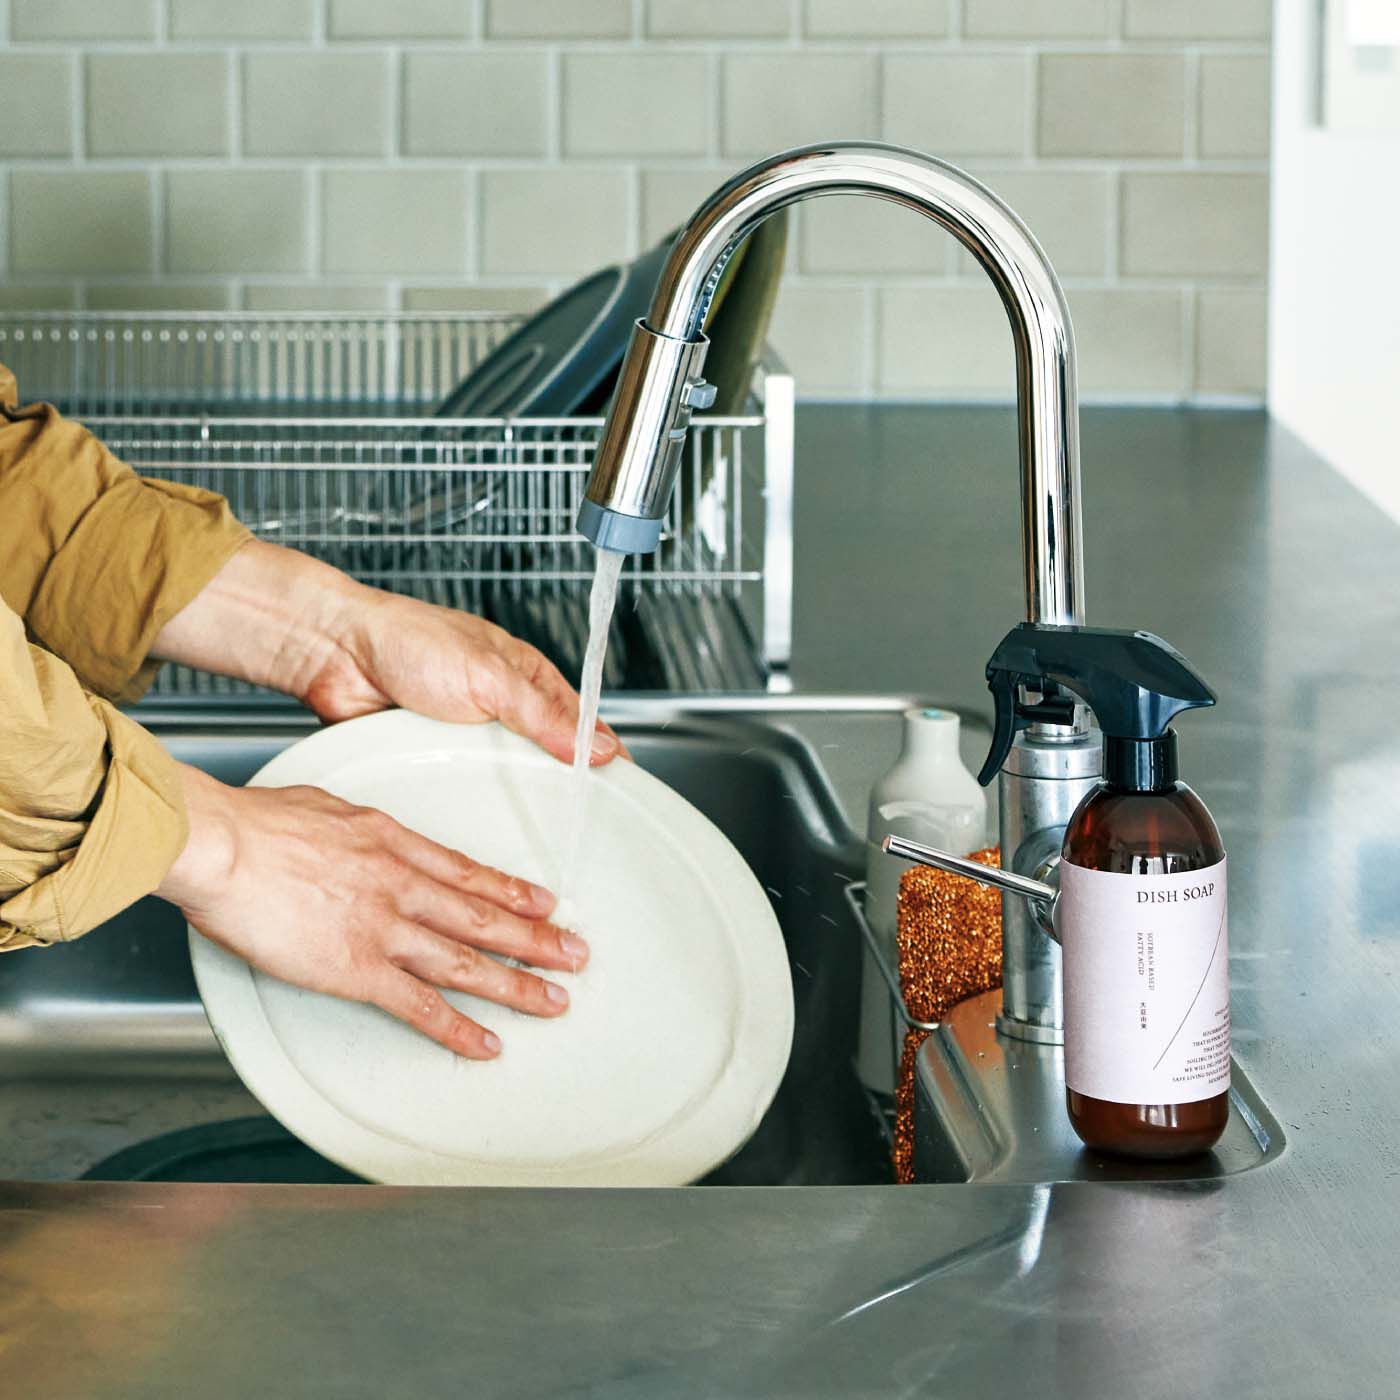 フェリシモの雑貨 Kraso|1/d DISH SOAP 食器用洗剤原液（詰め替え用）の会|水で希釈してワンスアデイのディスペンサーに入れて使ってください。